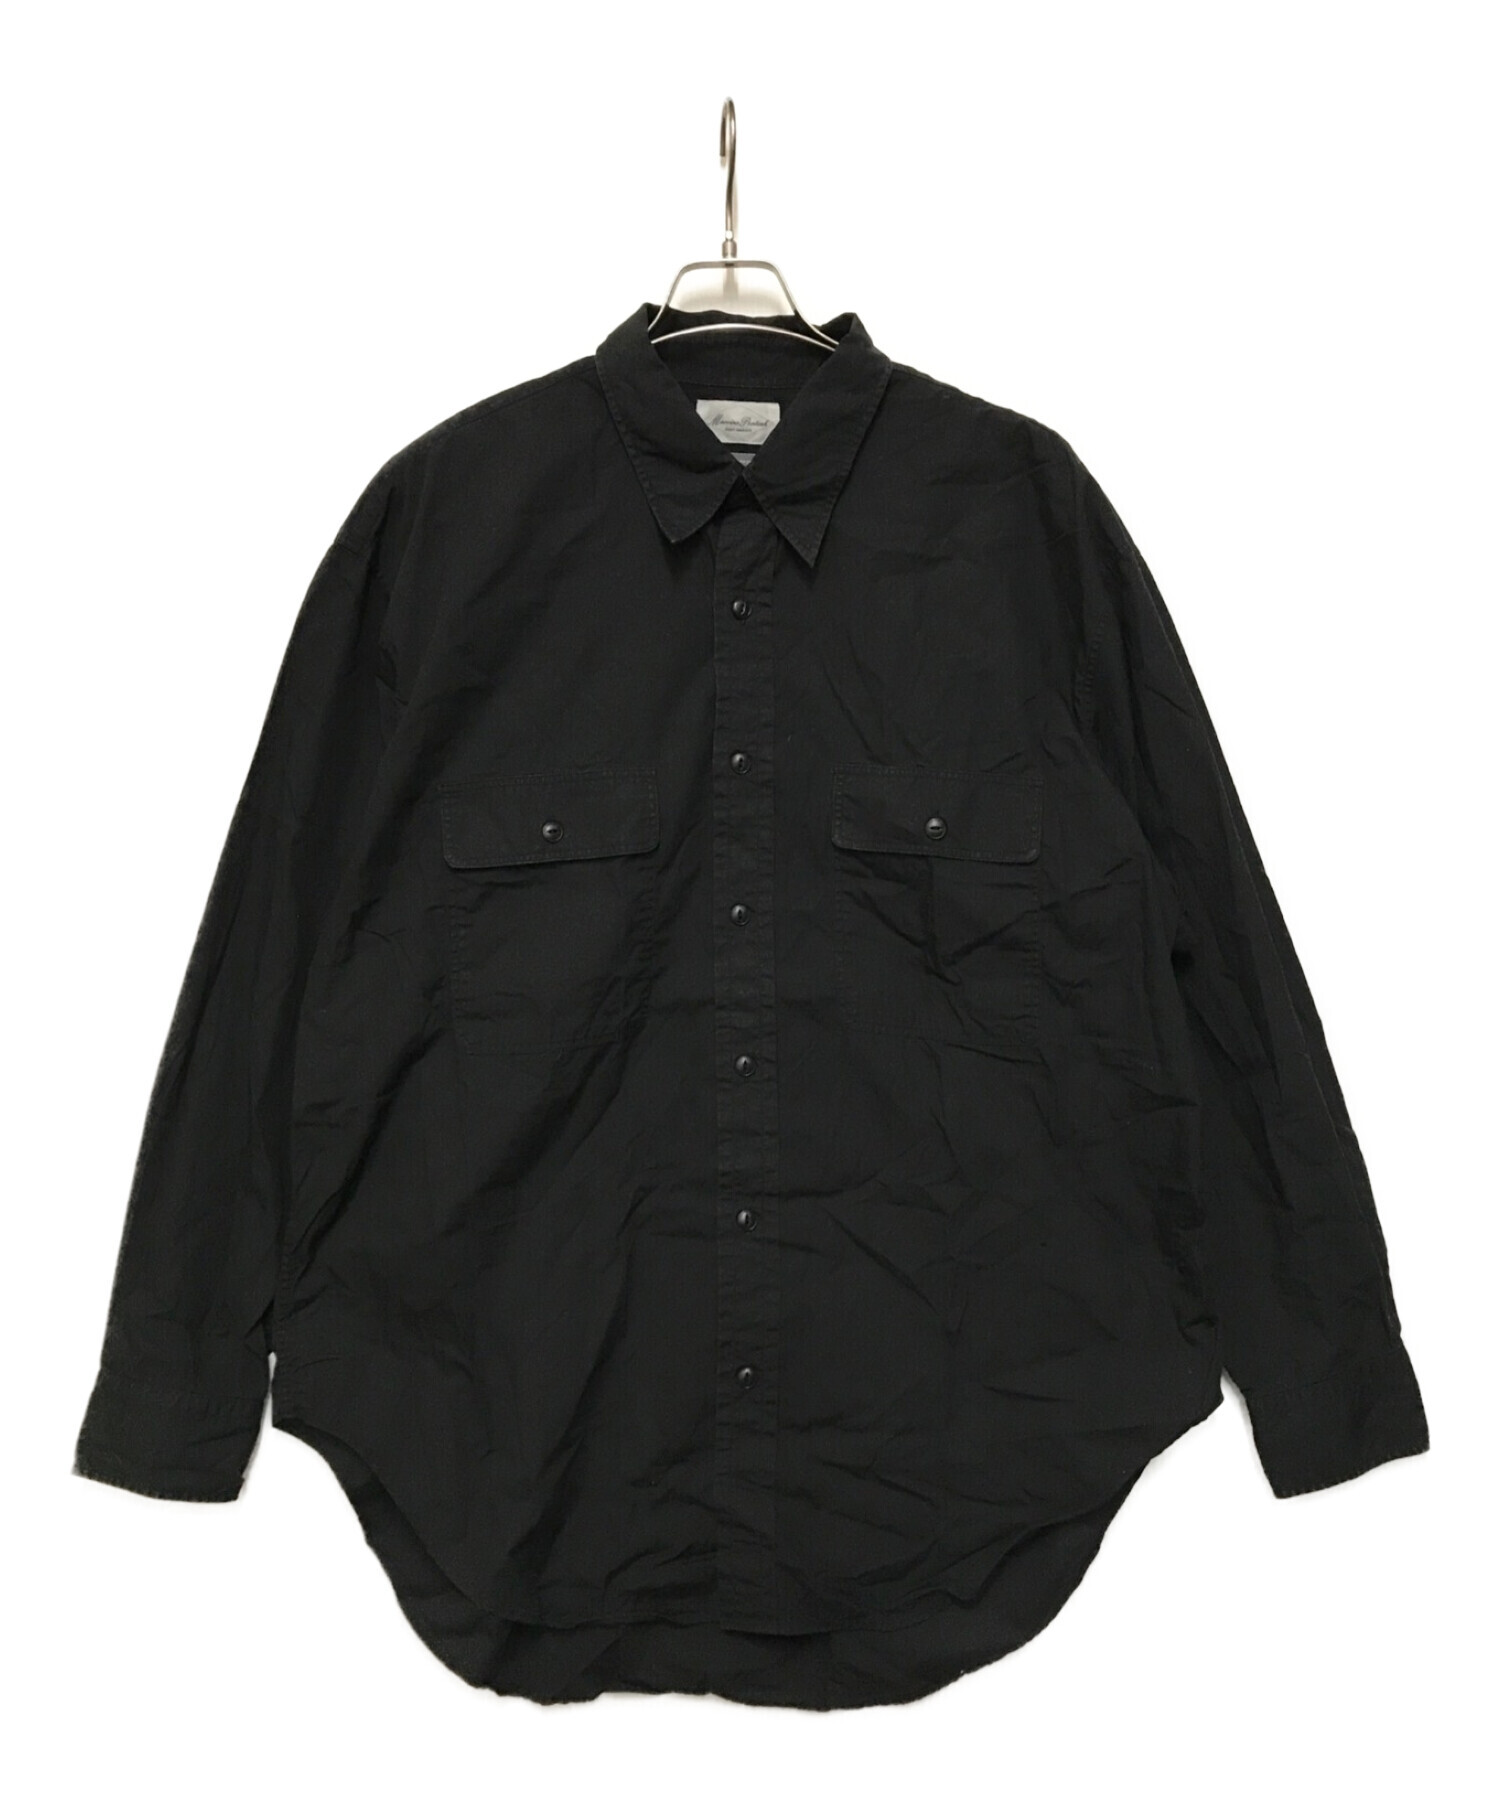 Marvine Pontiak Shirt Makers (マーヴィンポンティアックシャツメイカーズ) 長袖シャツ ブラック サイズ:SIZE ONE